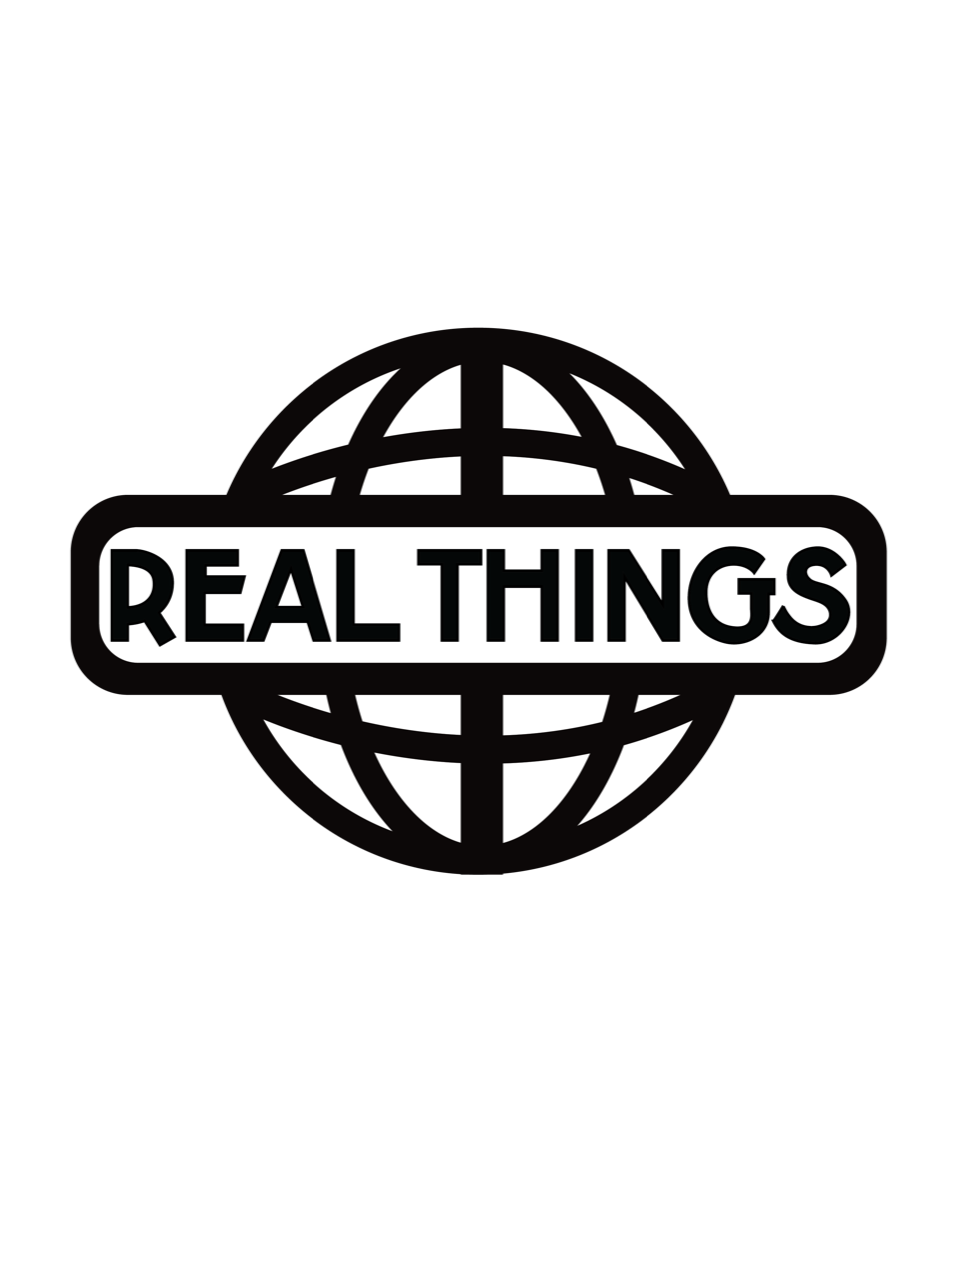 Realthings